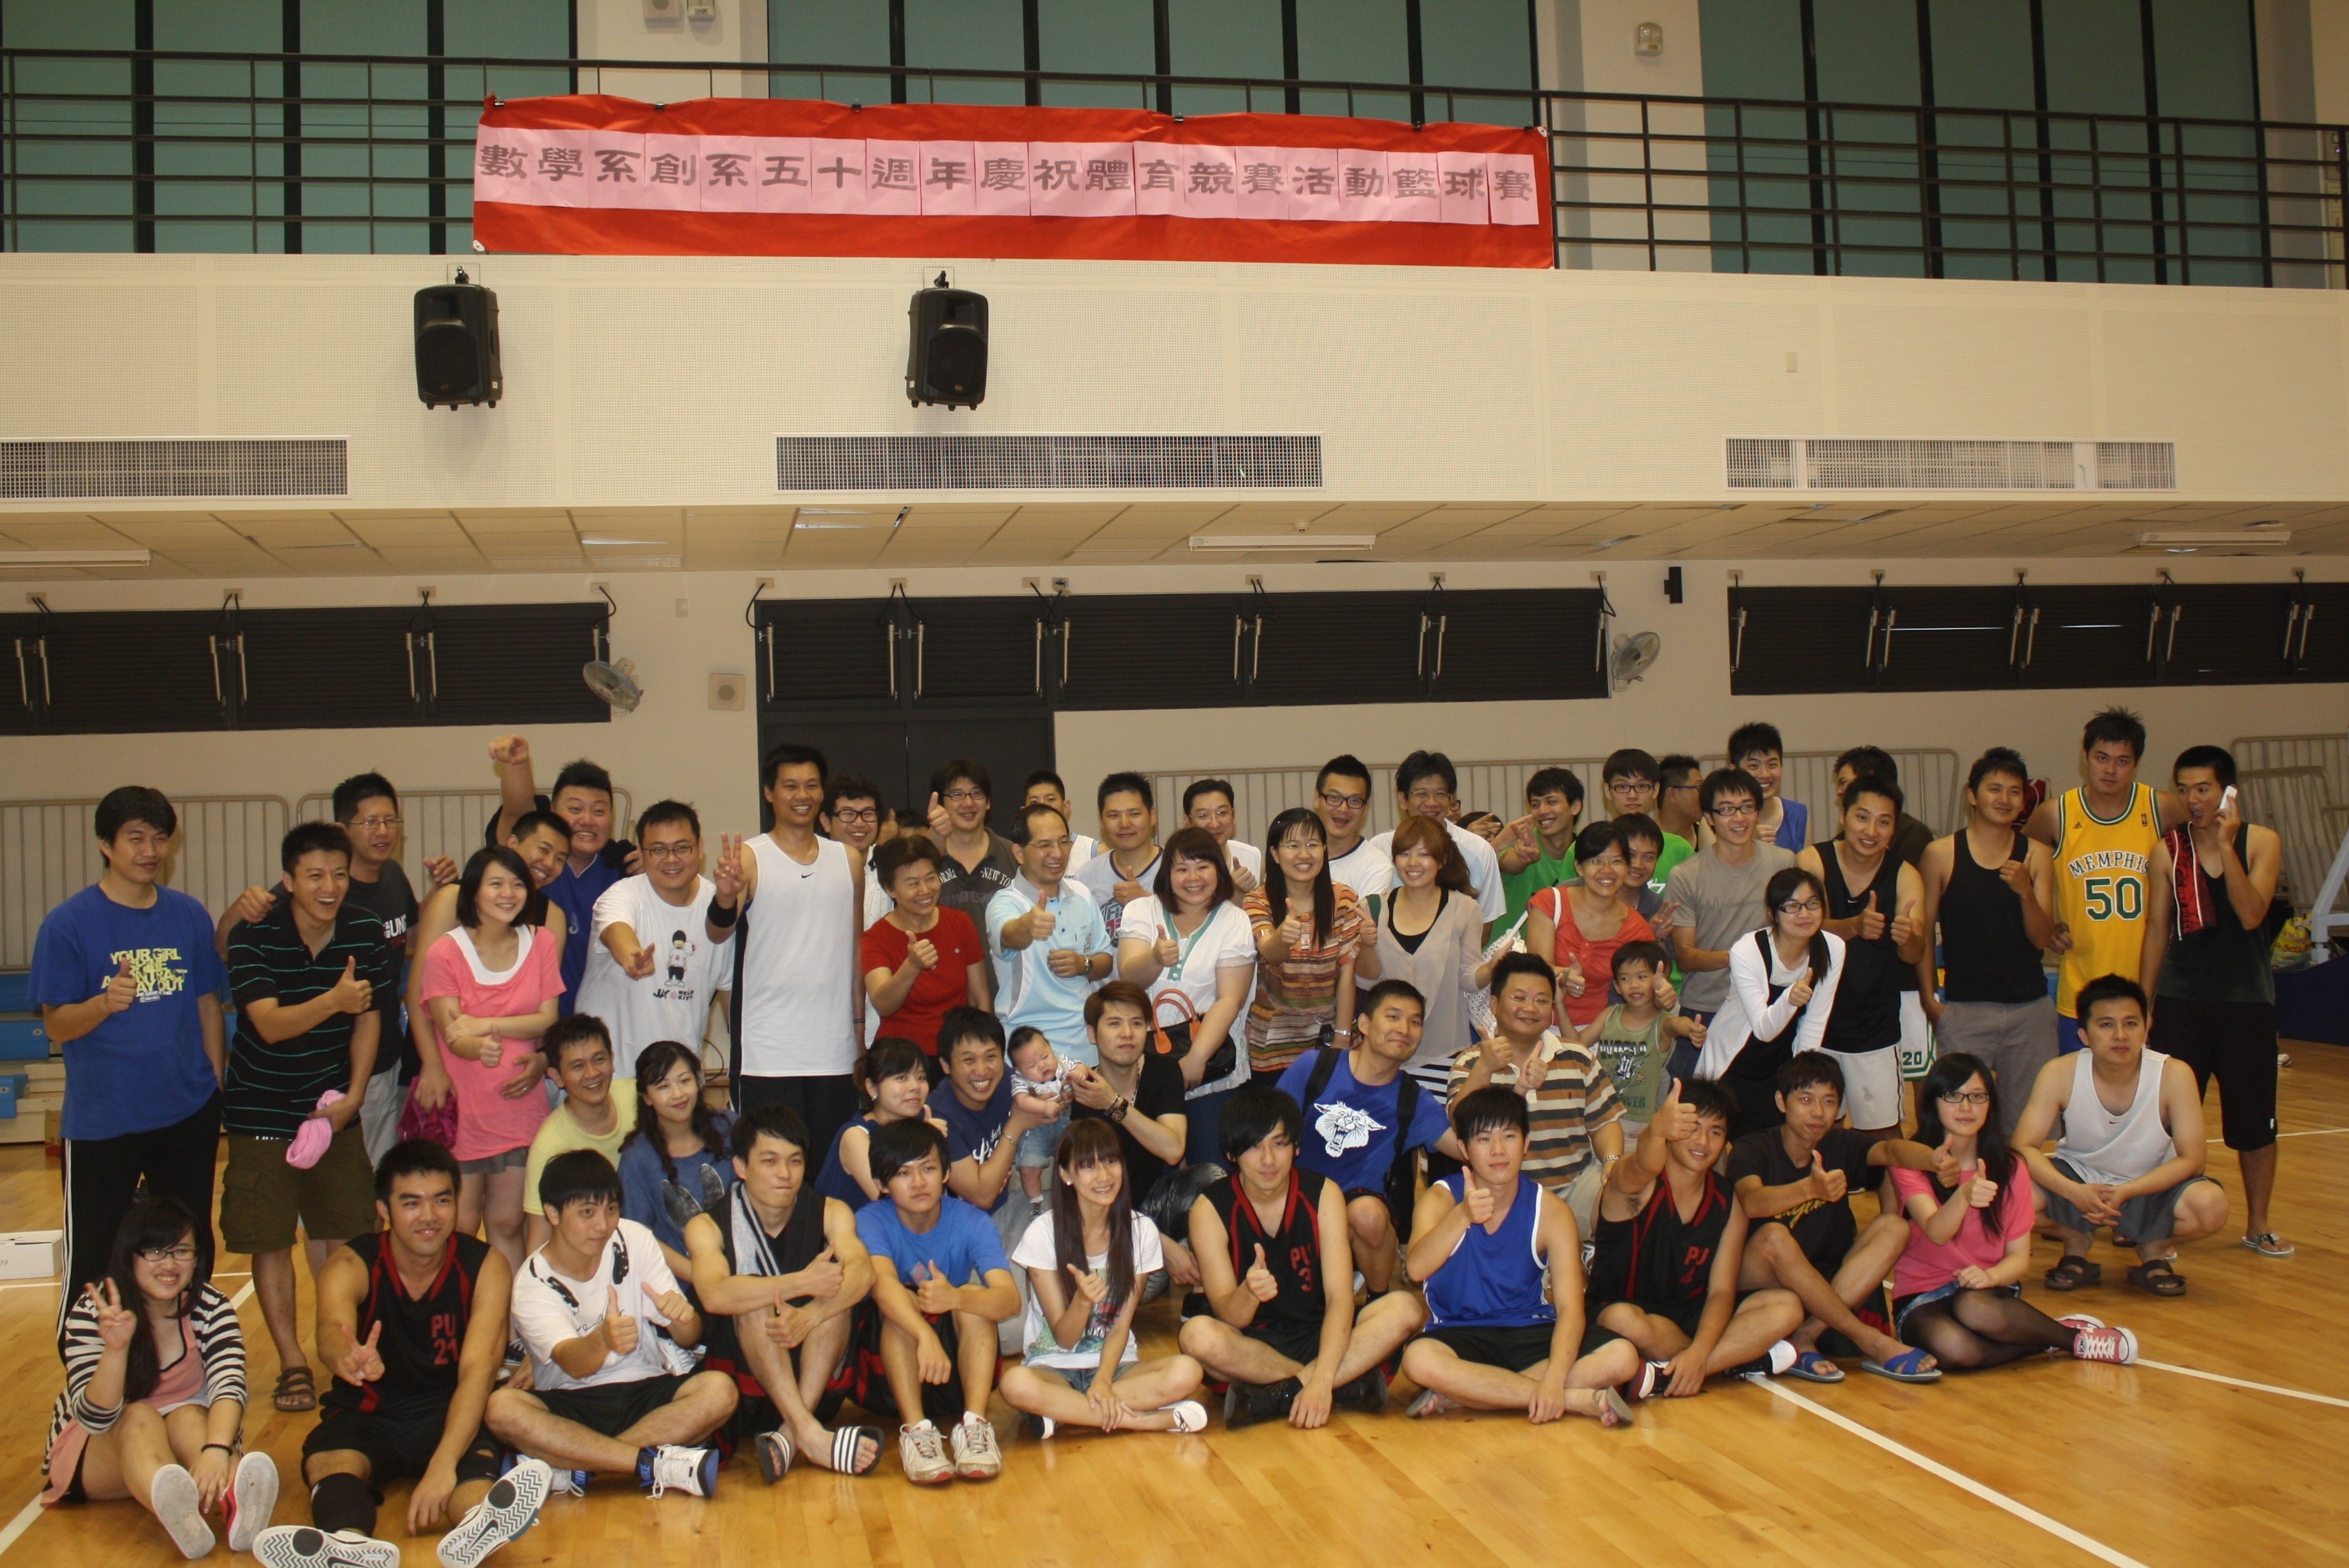 2012年6月9日  創系50周年慶體育競賽活動大合影